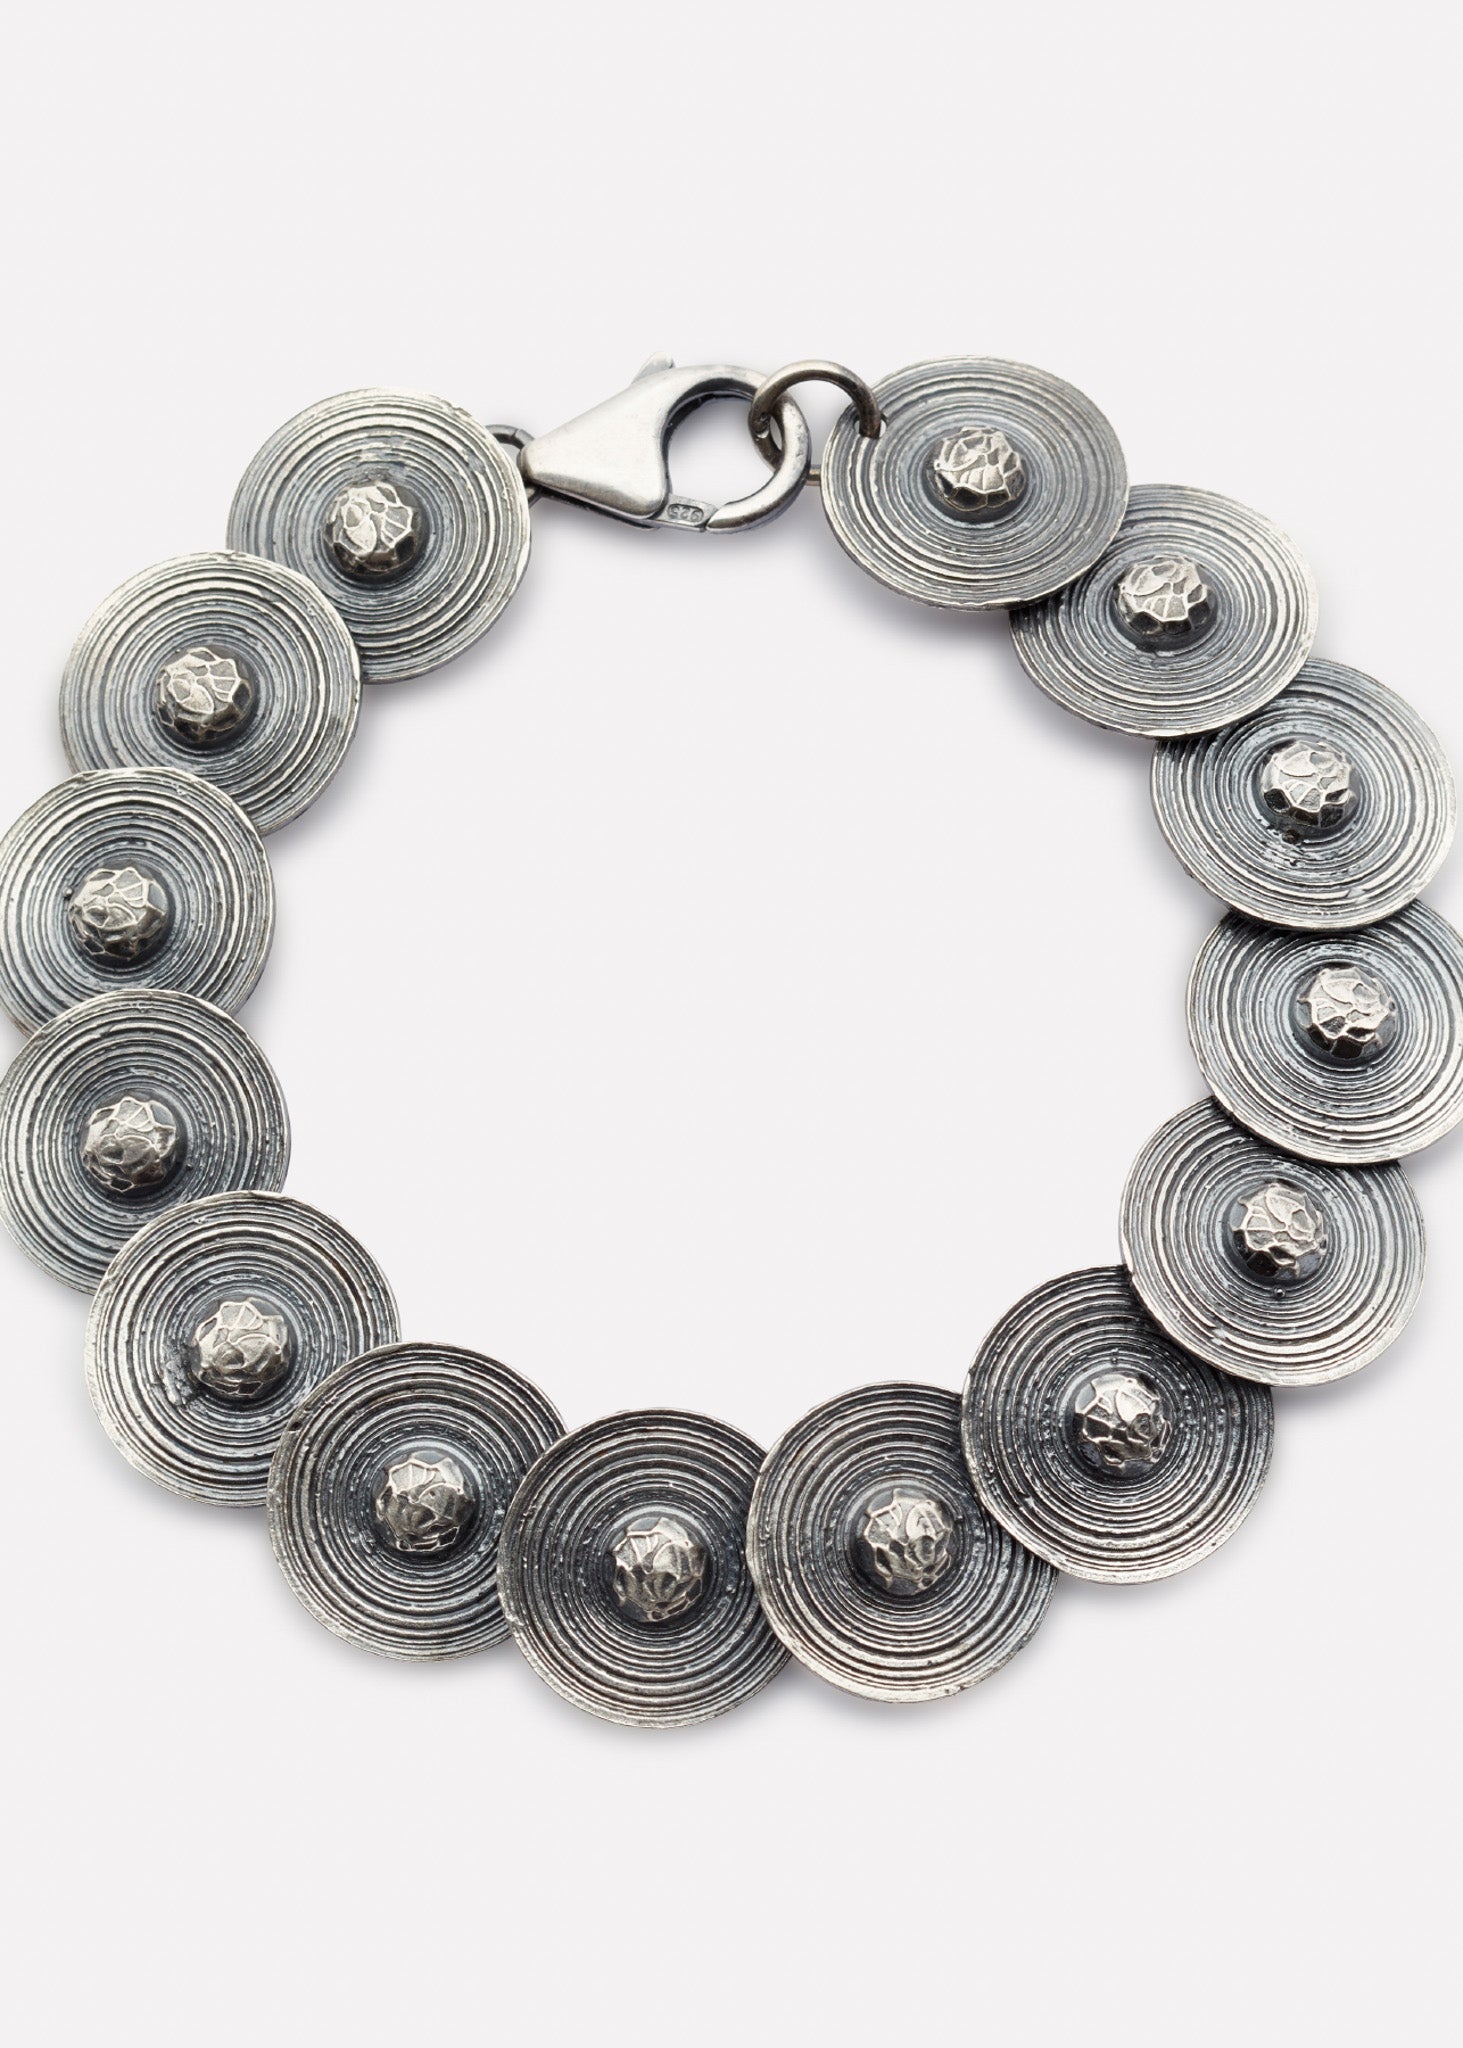 Viking shield bracelet in oxidized silver